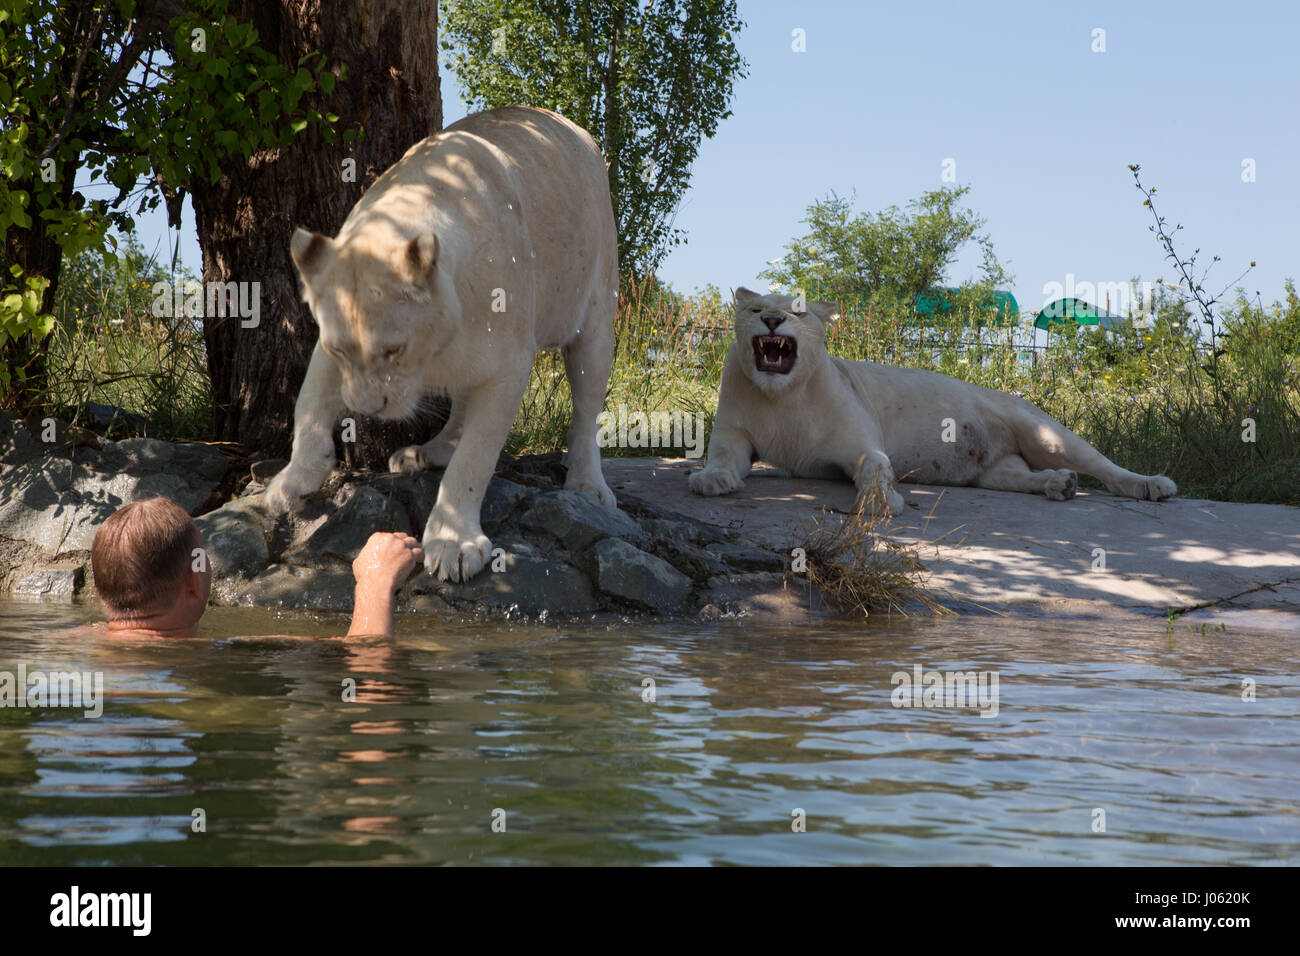 Ein weißer Löwe bietet eine helfende Pfote. ATEMBERAUBENDE Bilder von wilden Löwen und furchtlosen Menschen sitzen übereinander in einem Feld wurden von einem überrascht Fotografen eingefangen. Die surrealen Bilder zeigen stellen die 418-Pfund-Löwen begrüßen ihren menschlichen Begleiter wie sie gerne für Selfies, einander küssen auf den Mund und ein weißer Löwe streckt sogar eine helfende Pfote zu einem Mann in einem Teich schwimmen.  Andere Bilder zeigen die Löwen liebevoll Gruß Menschen aus ihren Autos und ein unglaubliches Bild, ein Mann tapfer legt seinen Arm im Mund des Tieres für die Kamera posieren. Die spektakuläre ich Stockfoto